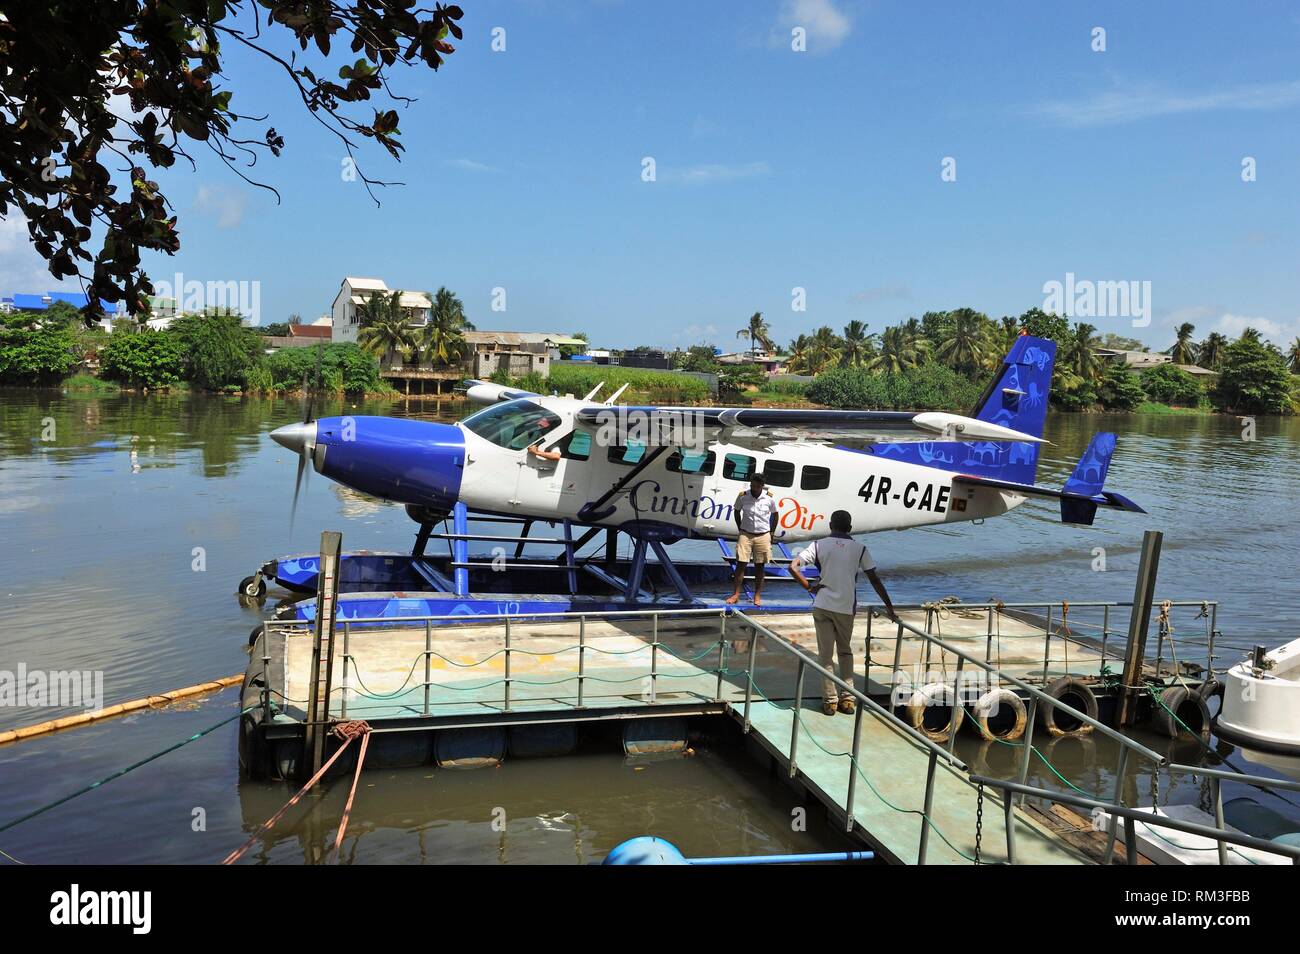 Ponton pour l'embarquement d'un hydravion de la cannelle du Sri Lanka, de l'air service de taxi aérien, au départ de Colombo, Sri Lanka, Inde, Asie du Sud. Banque D'Images